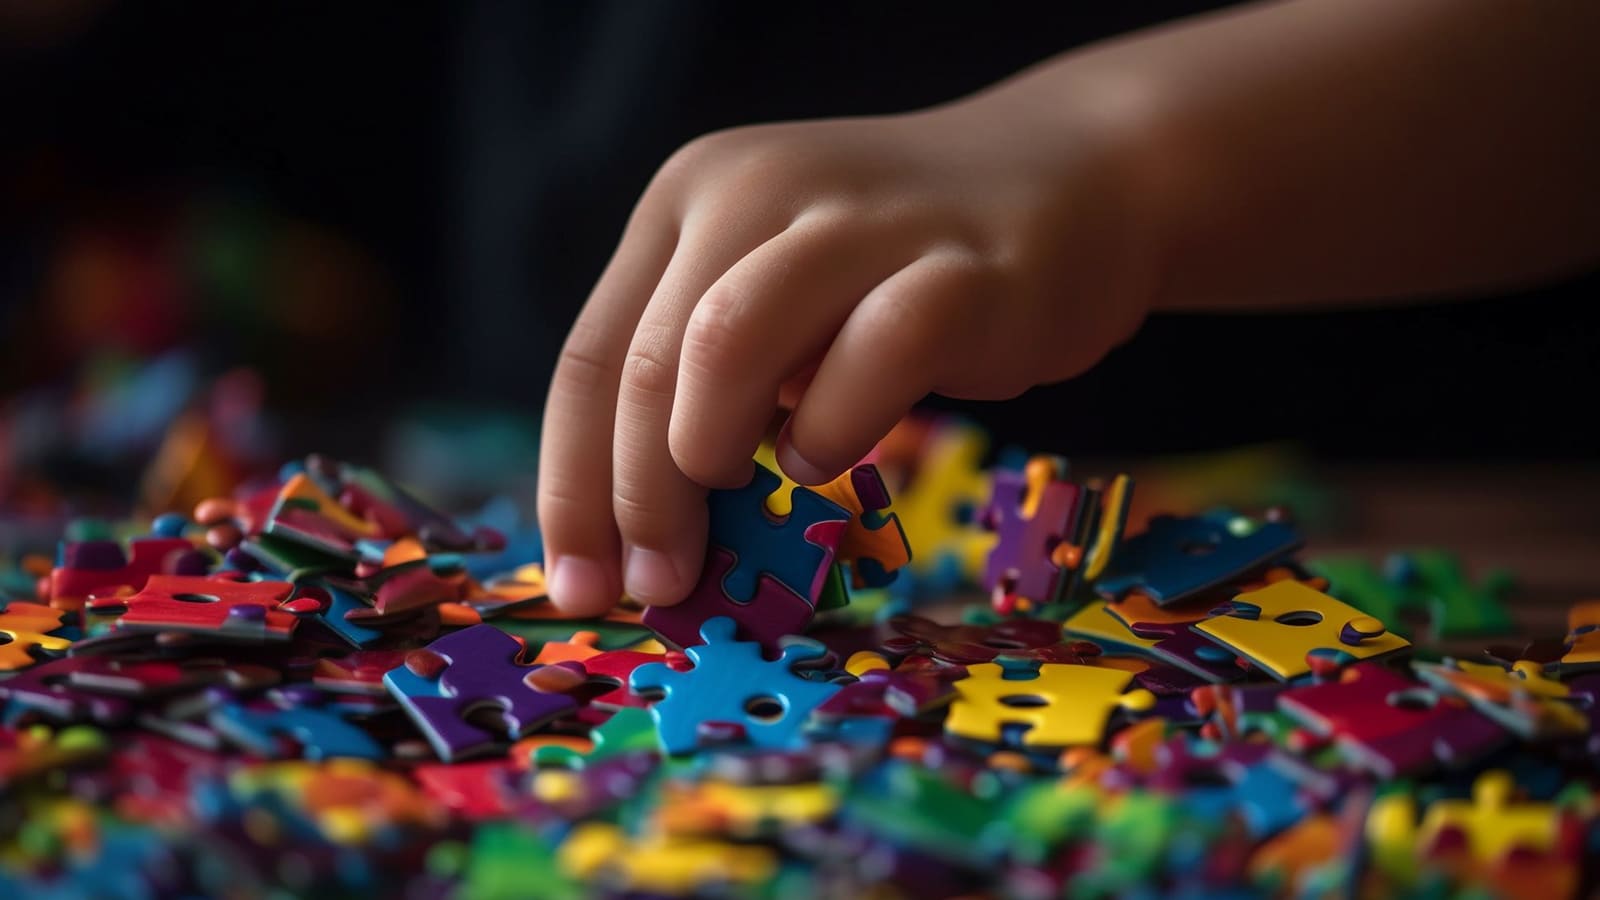 Foto retrata a mão de uma criança branca pegando peças coloridas de um quebra-cabeça, comumente usada para ilustrar o espectro. Neste caso, para mostrar se o autismo é considerado deficiência.